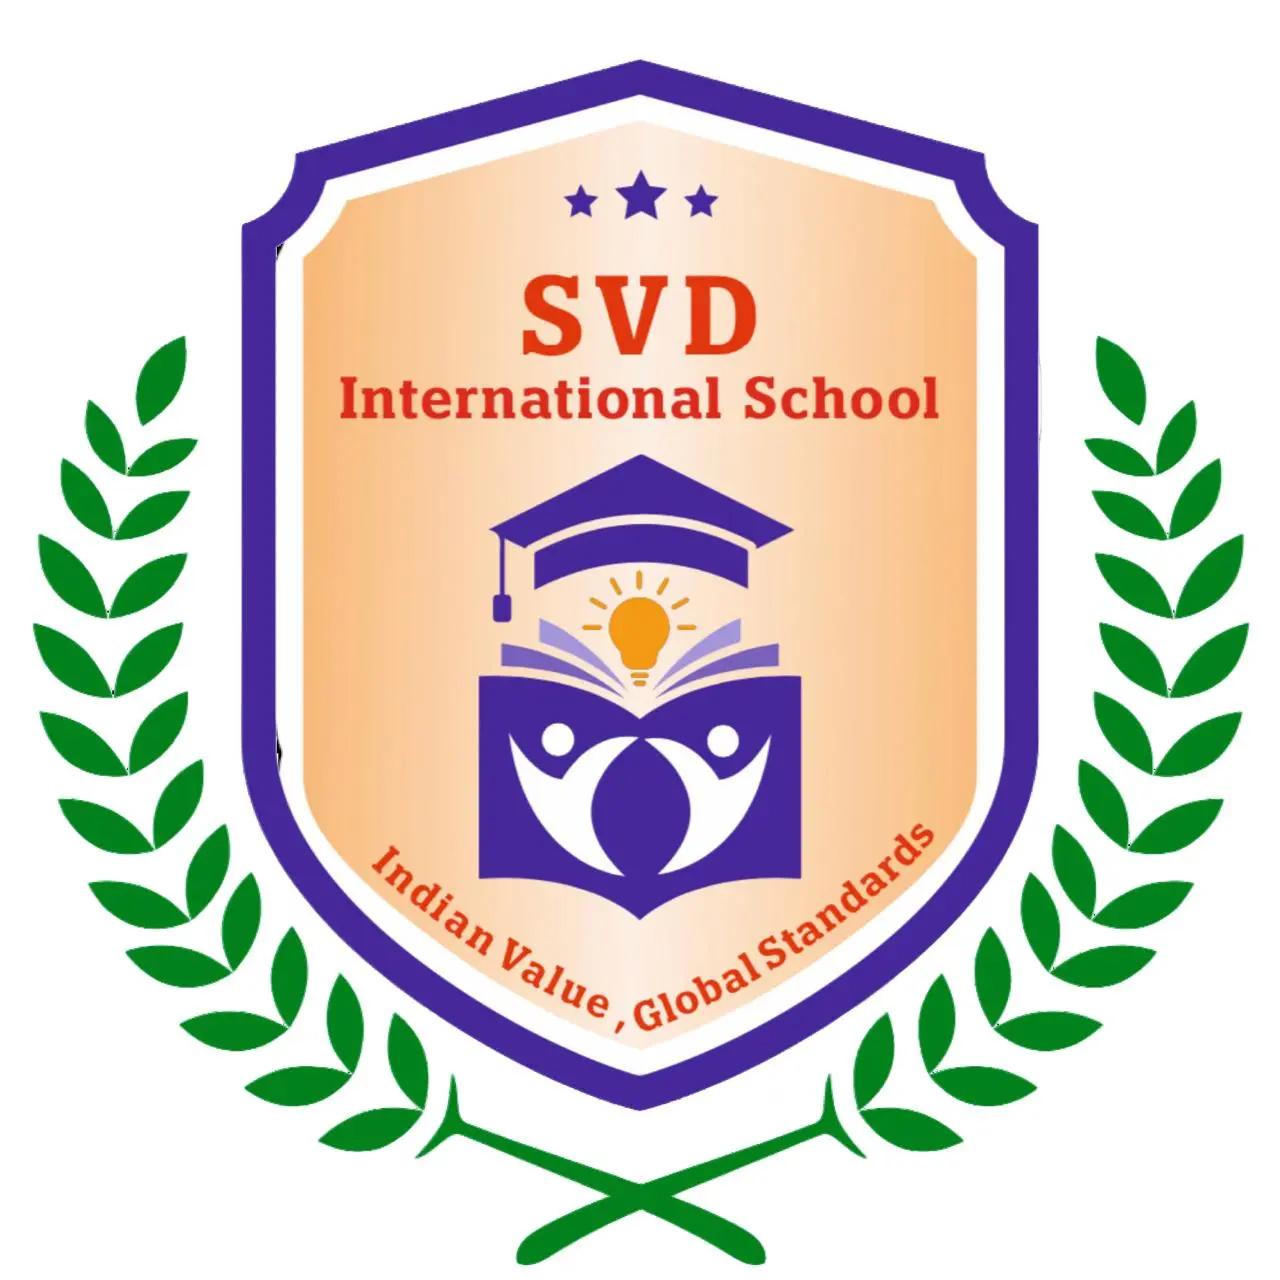 svd School